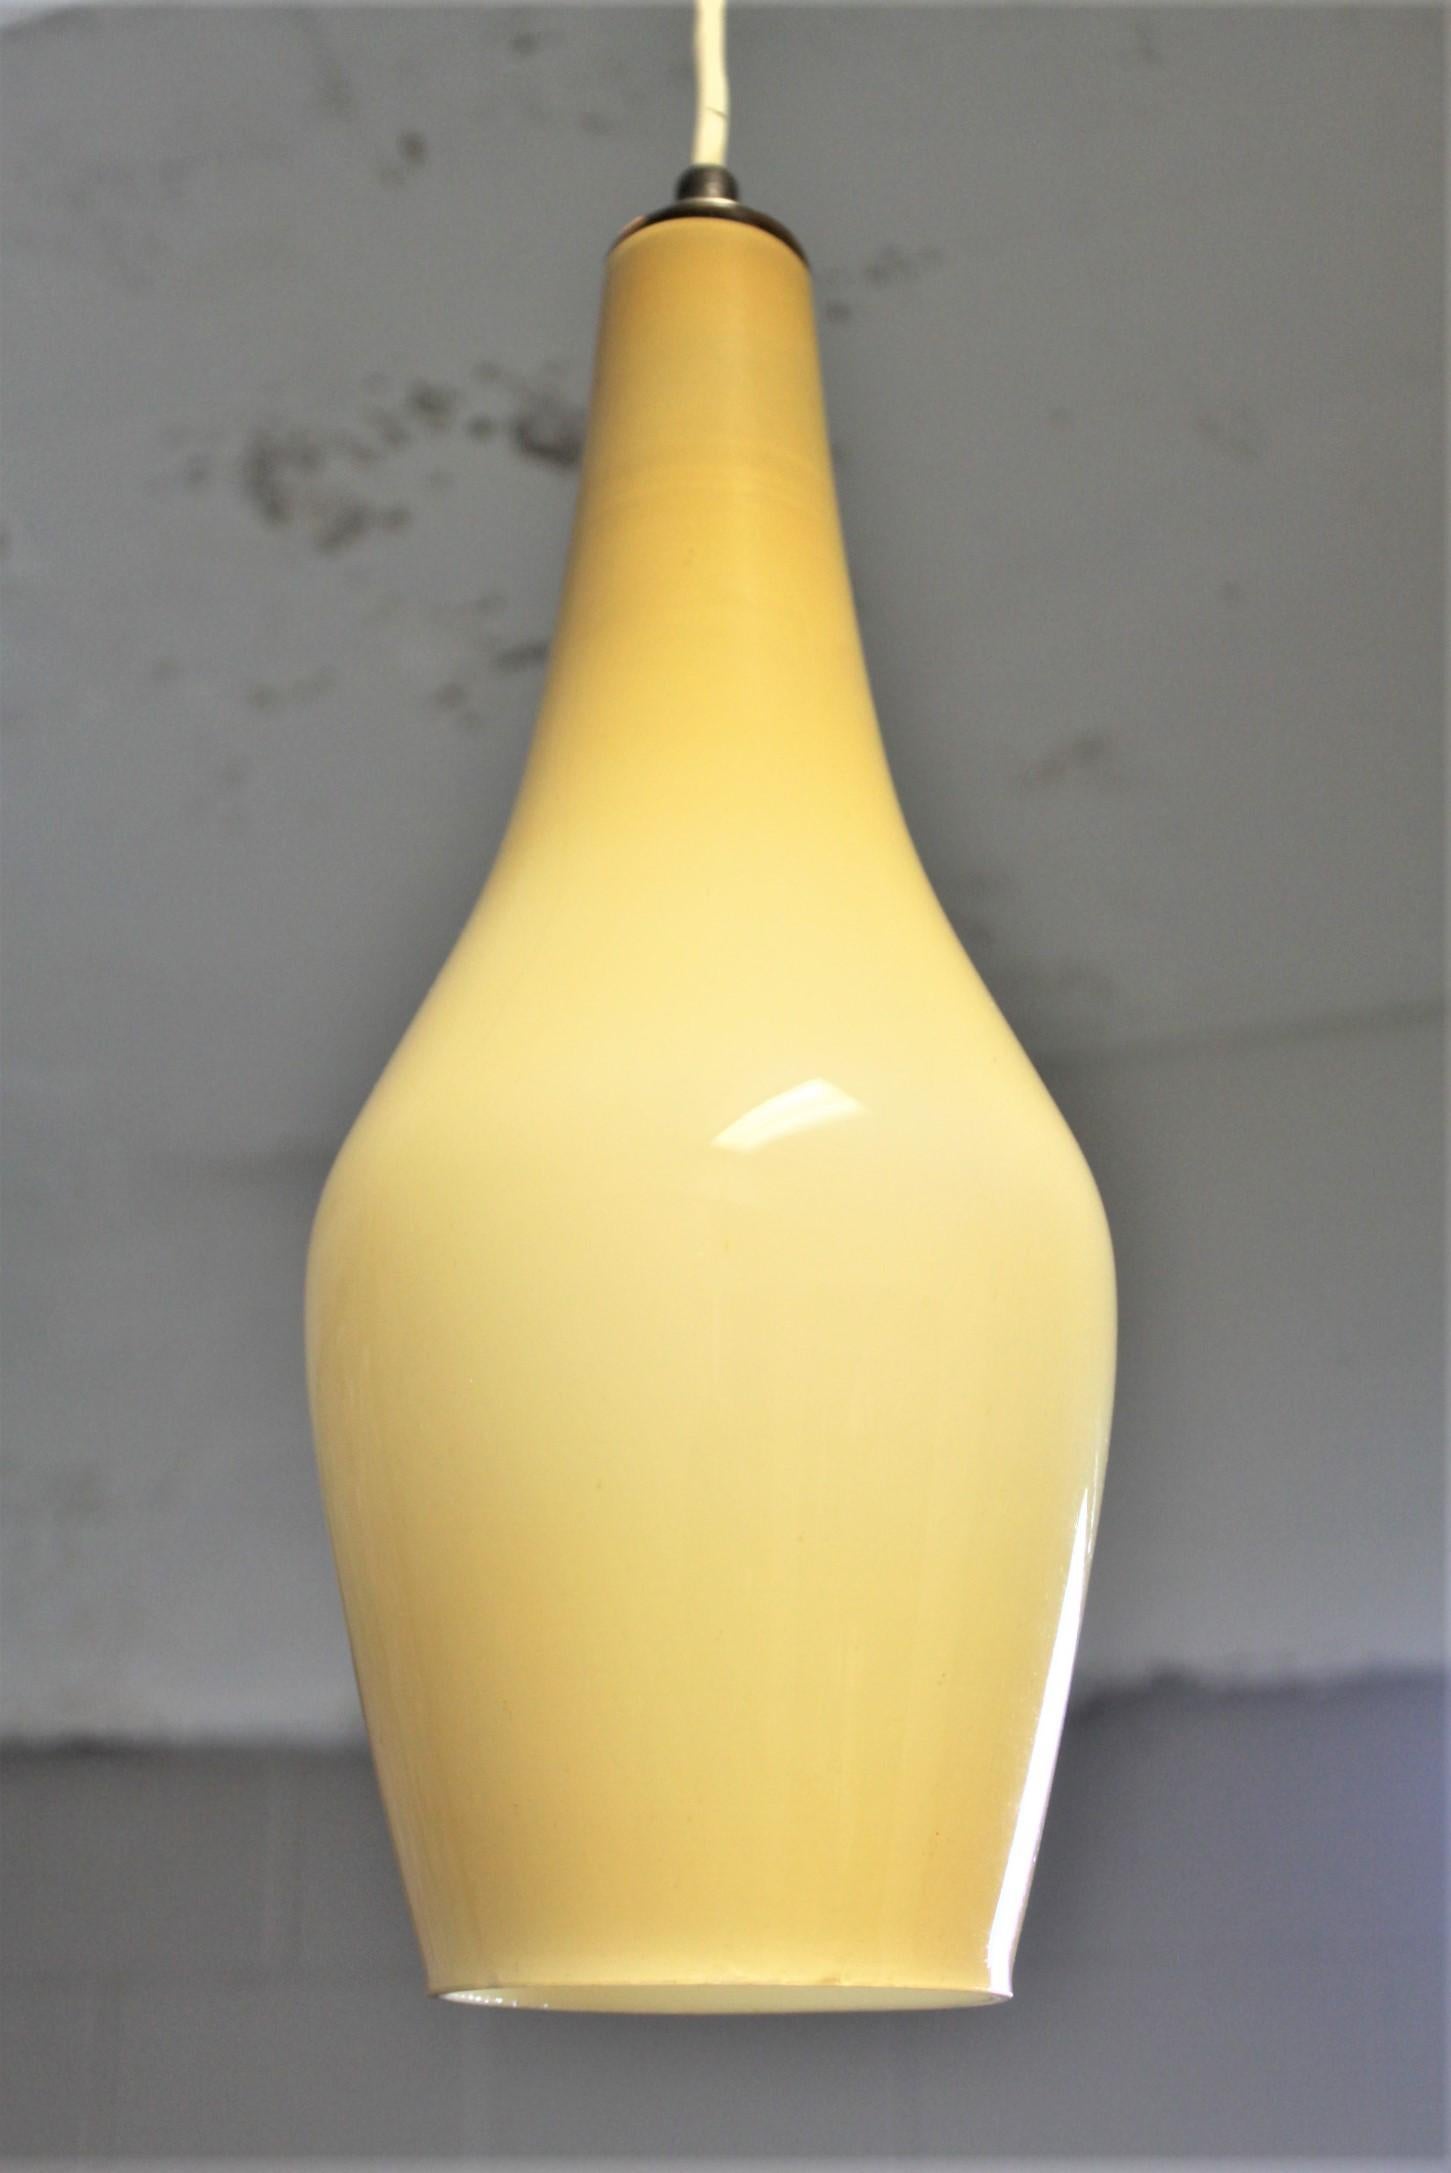 Diese handgefertigte Pendelleuchte aus Glas ist unsigniert, wurde aber vermutlich um 1965 in Italien oder Skandinavien im Fog- und Morup-Stil der Jahrhundertmitte hergestellt. Der Schirm ist in einem tiefgelben oder goldfarbenen Glas über Weiß mit